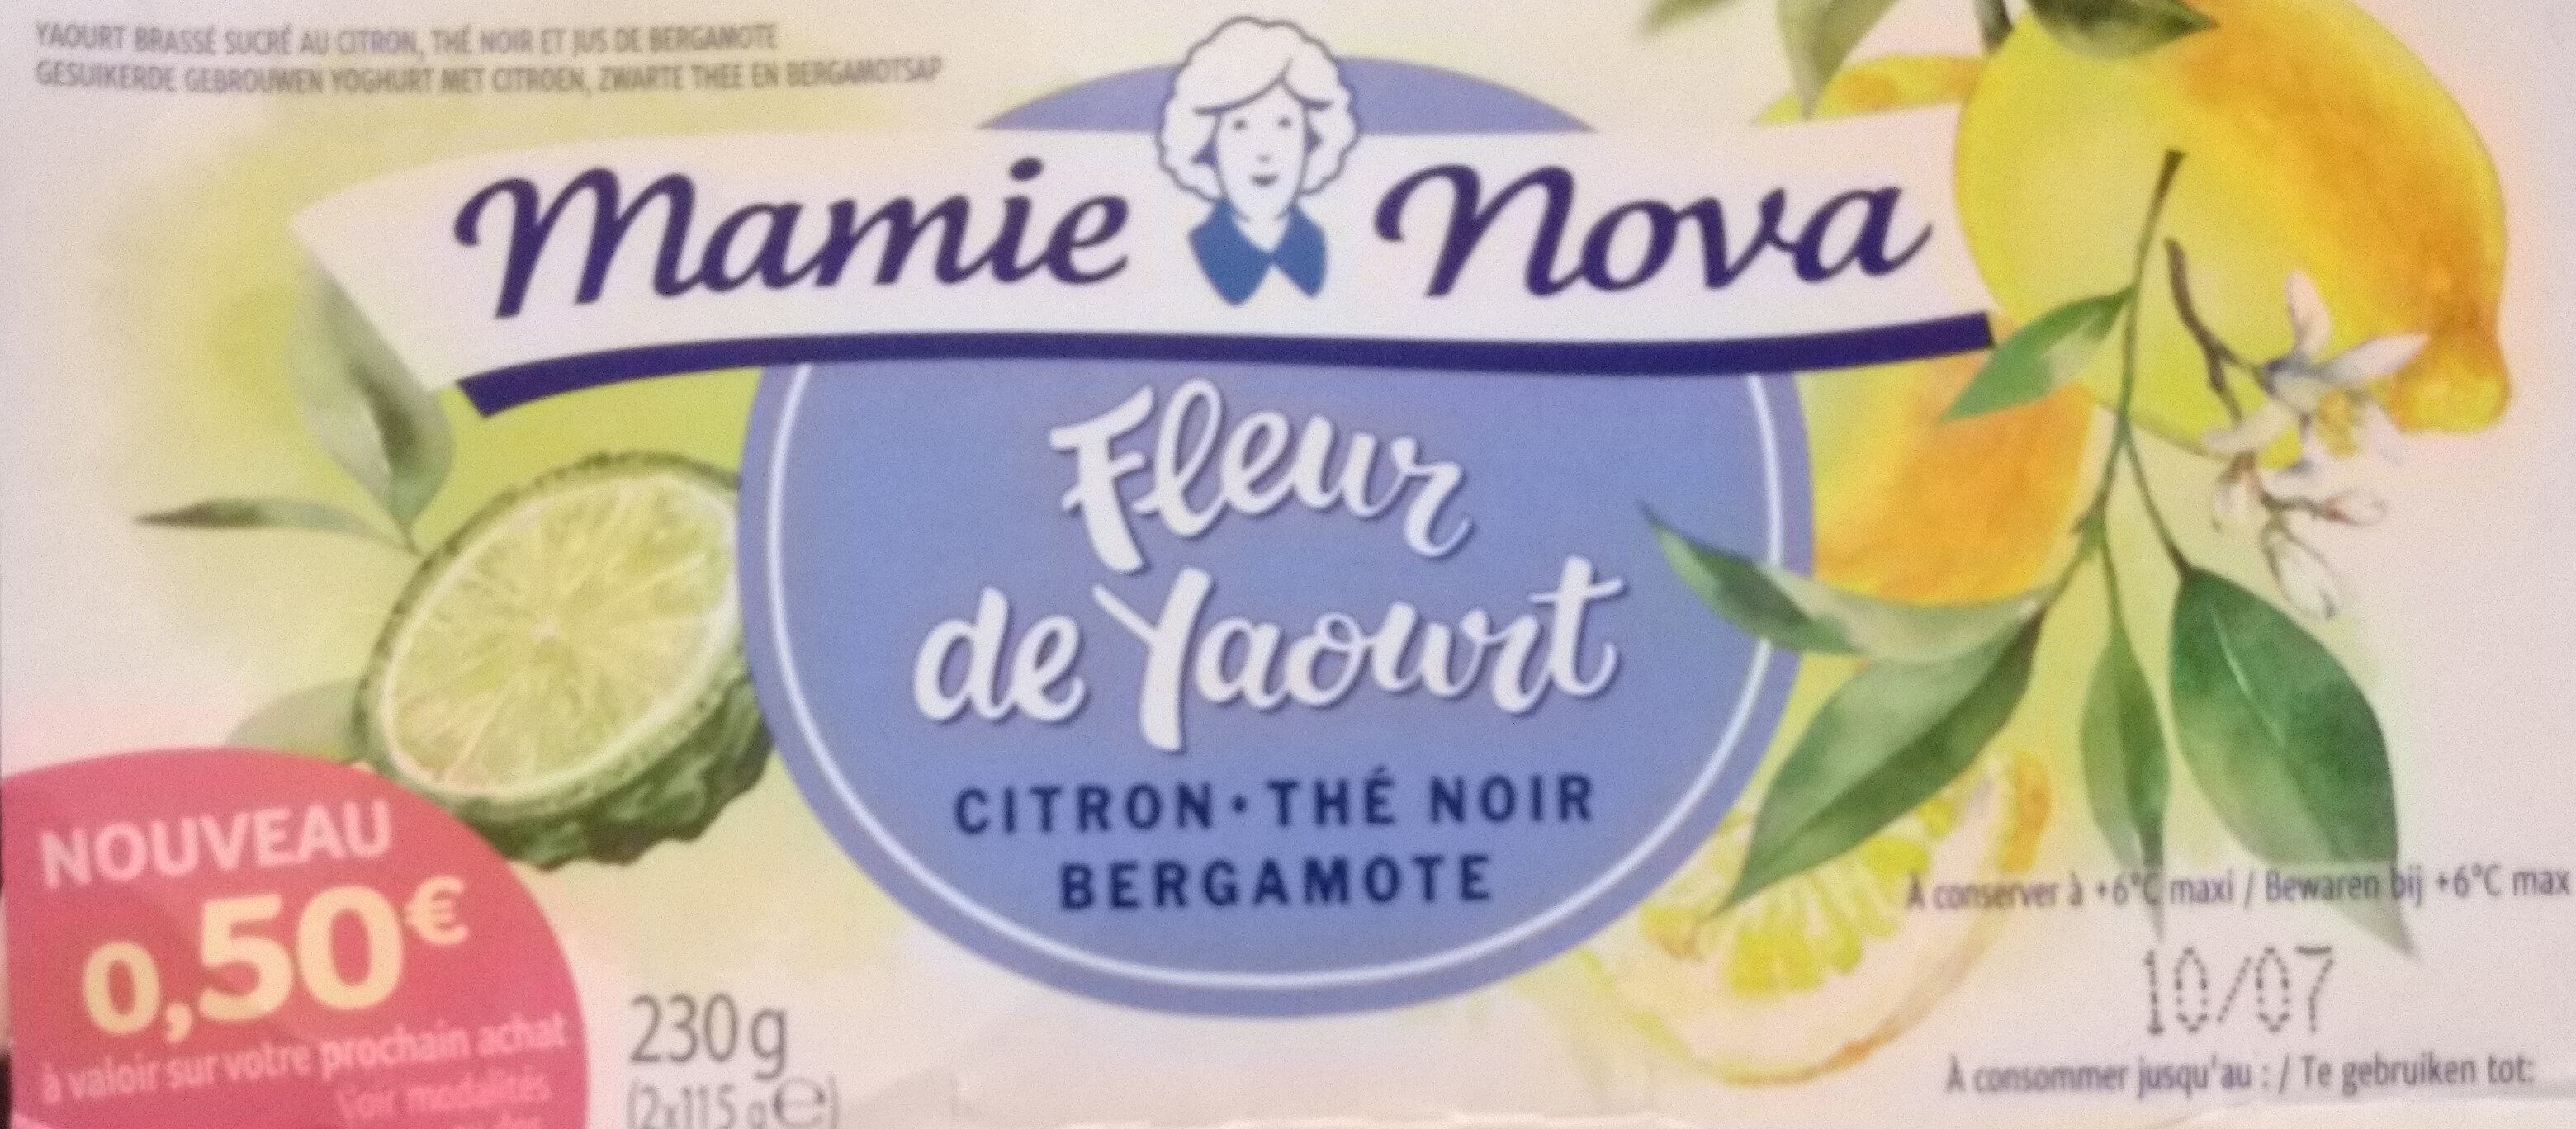 Fleur de yaourt citron, thé noir, bergamote - Product - fr